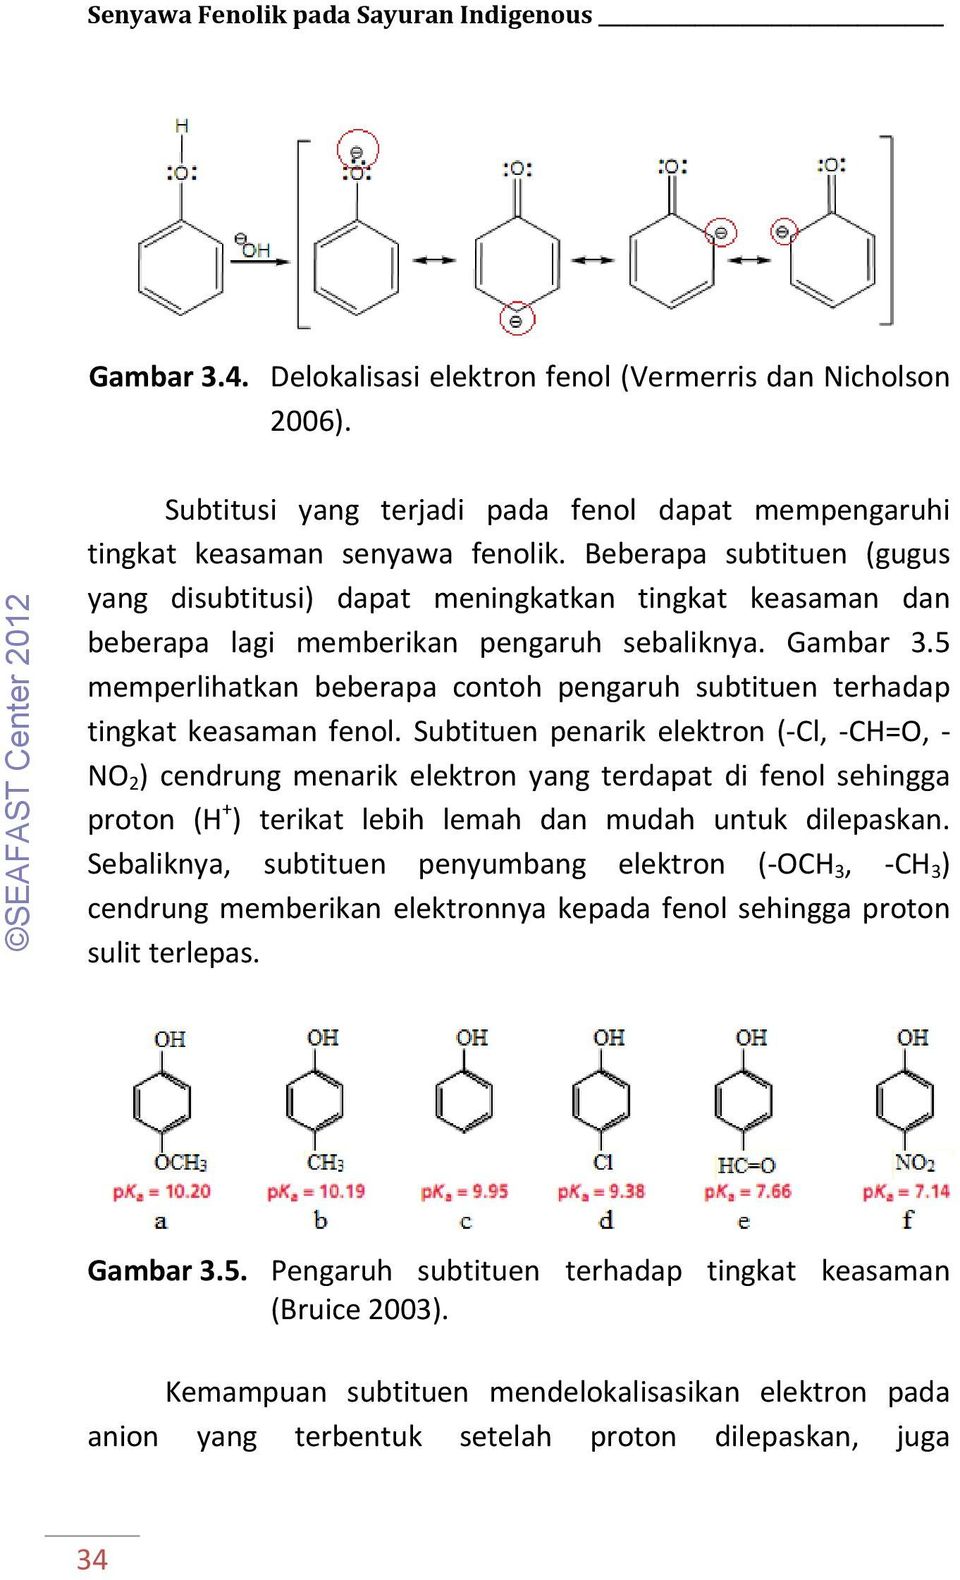 Detail Contoh Senyawa Fenol Nomer 29